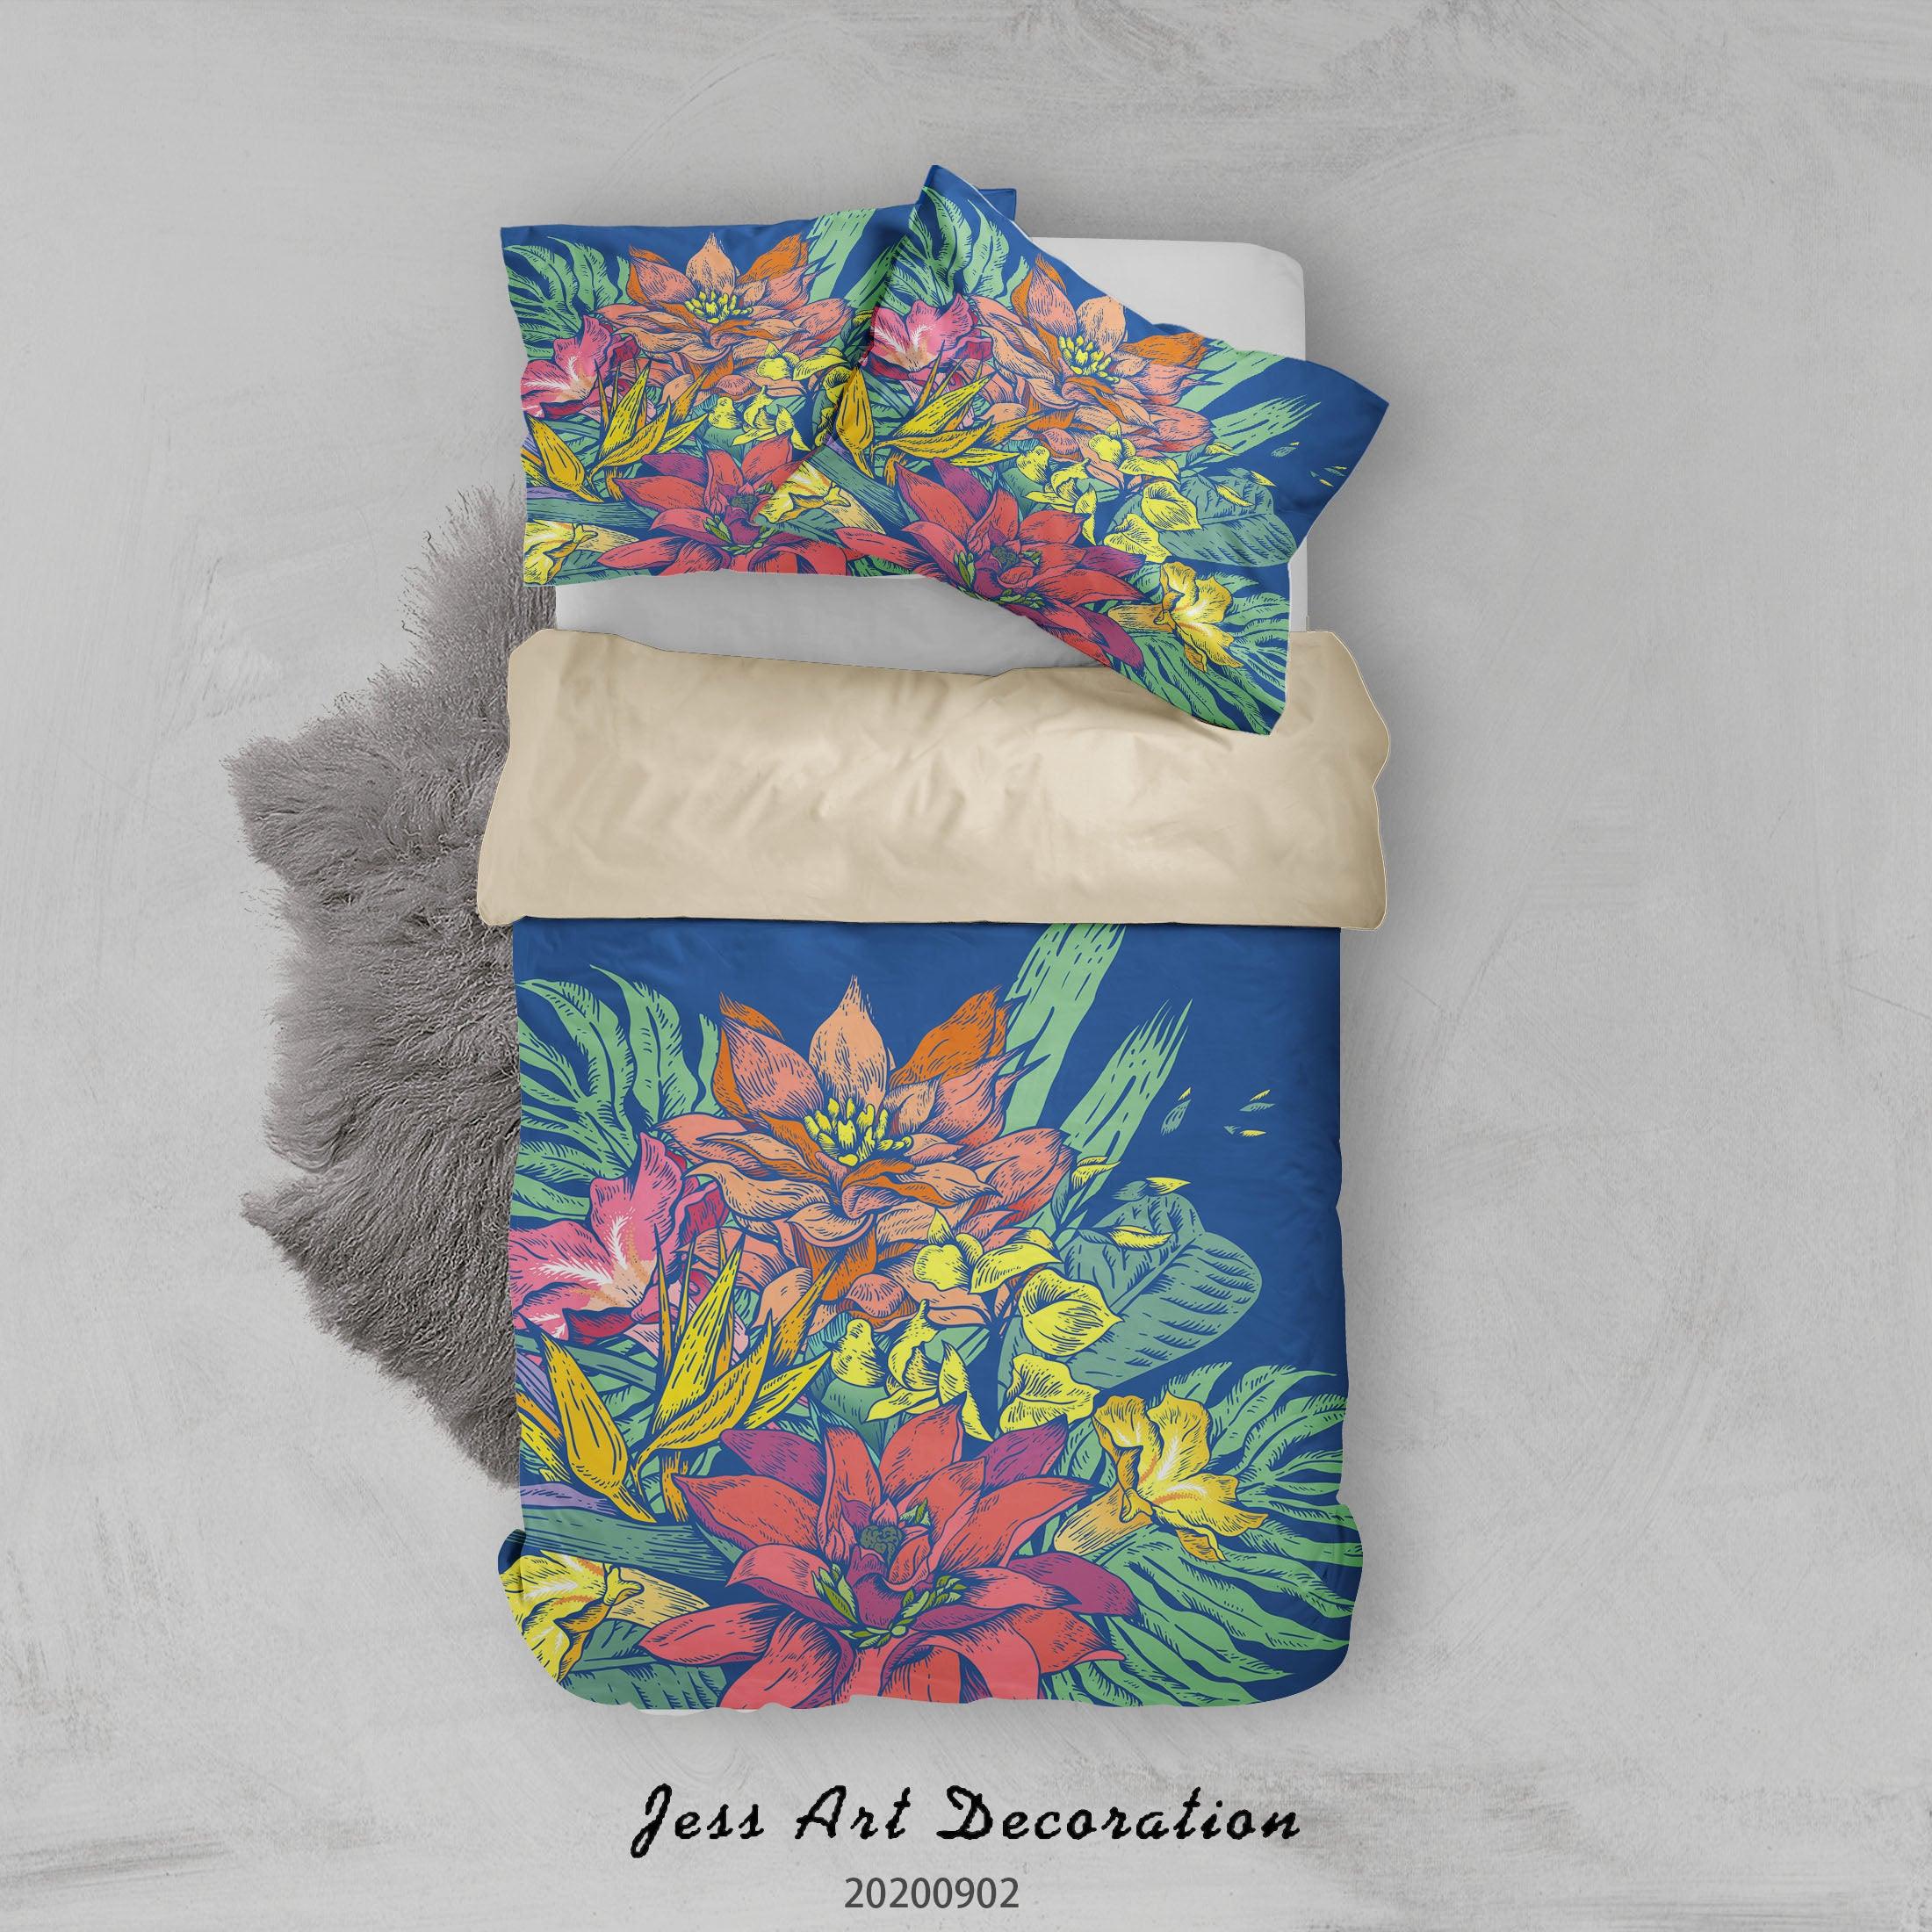 3D Watercolour Flowers Leaves Pattern Quilt Cover Set Bedding Set Duvet Cover Pillowcases WJ 1498- Jess Art Decoration